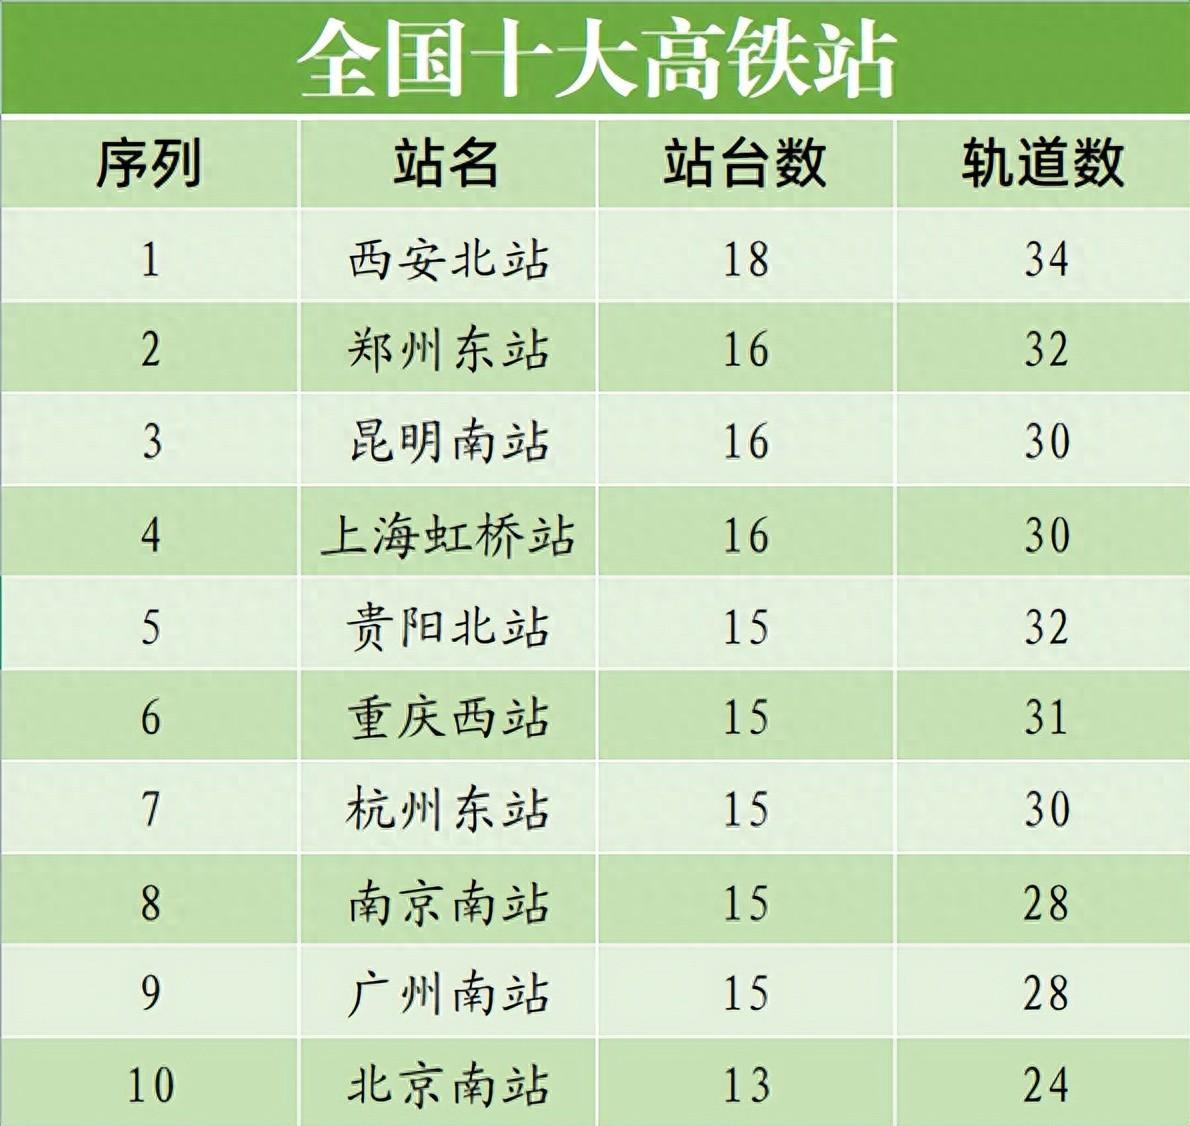 中国高铁站排名前十最大的站